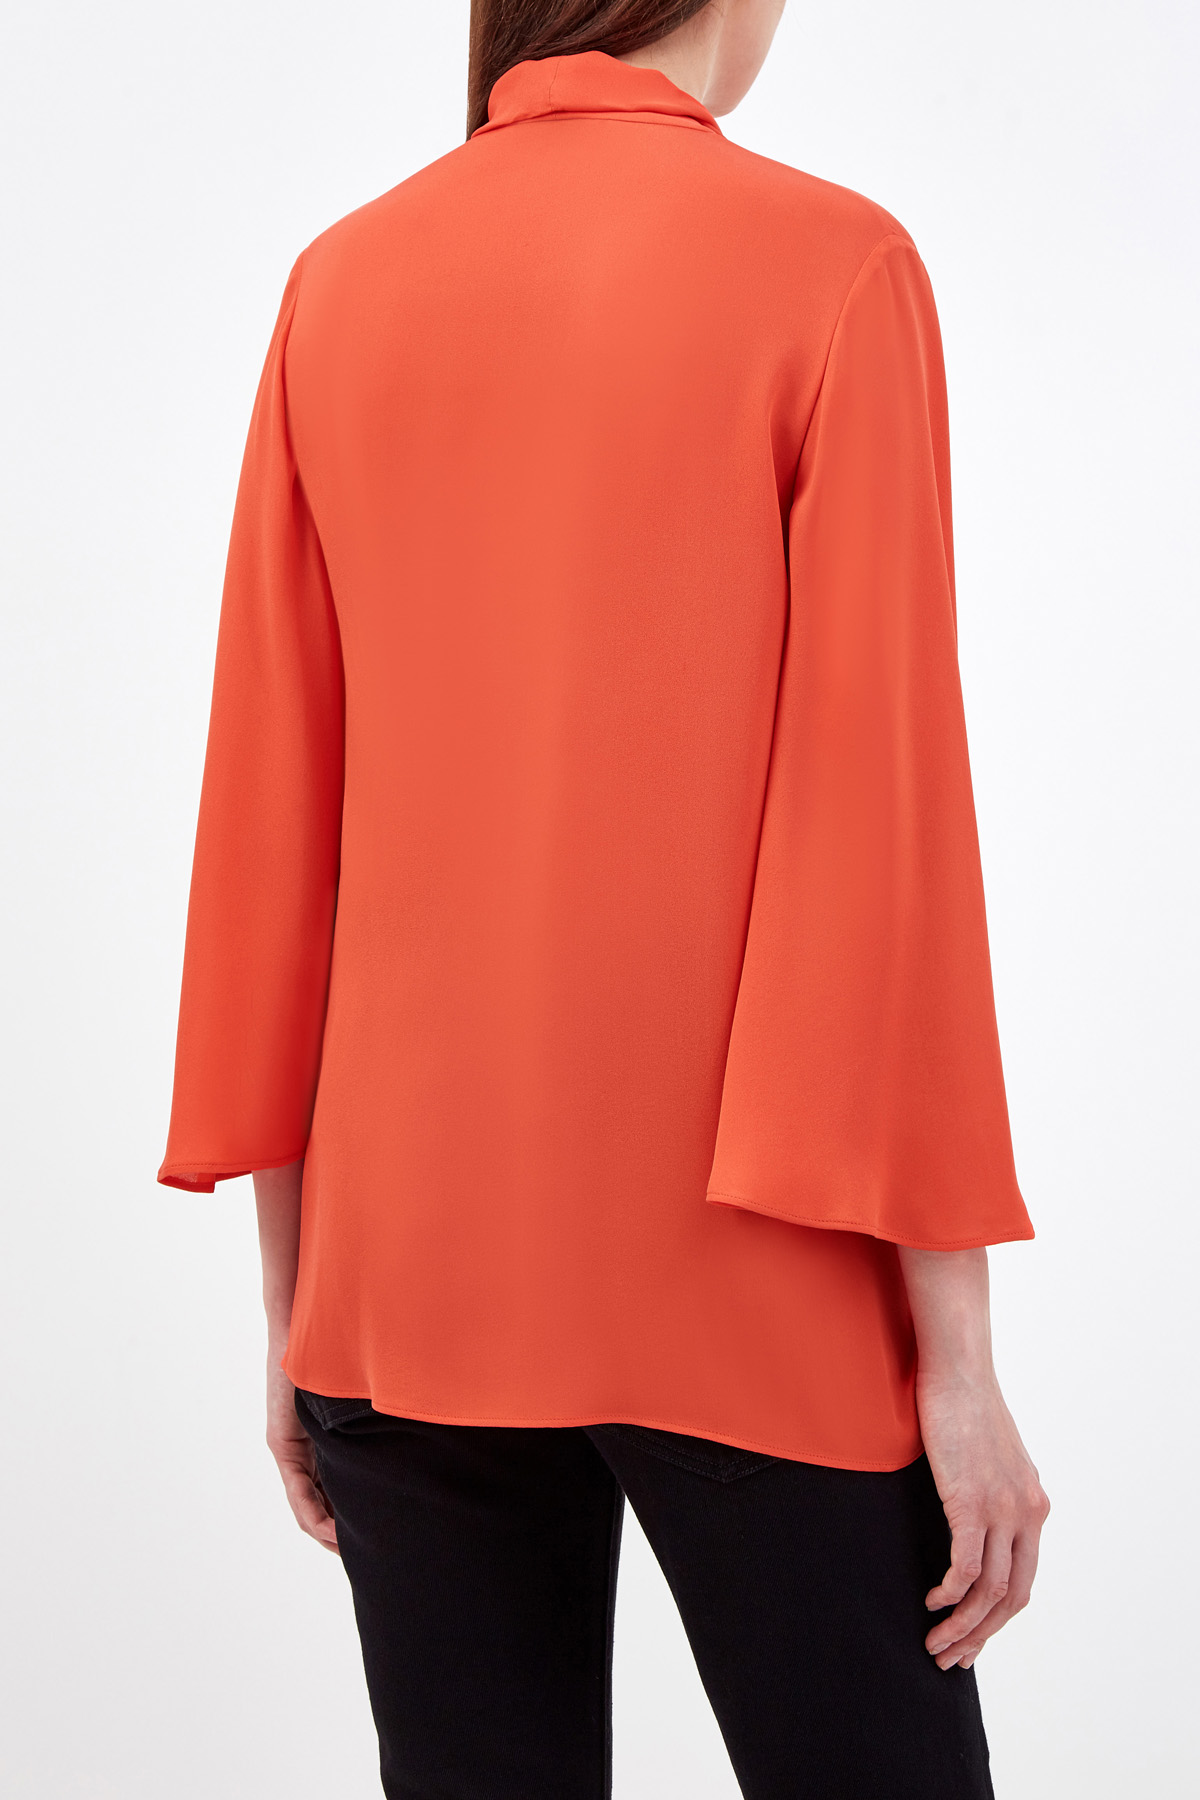 Шелковая блуза из коллекции Neonature с рукавами-клеш VALENTINO, цвет оранжевый, размер 40;42;44;38 - фото 4